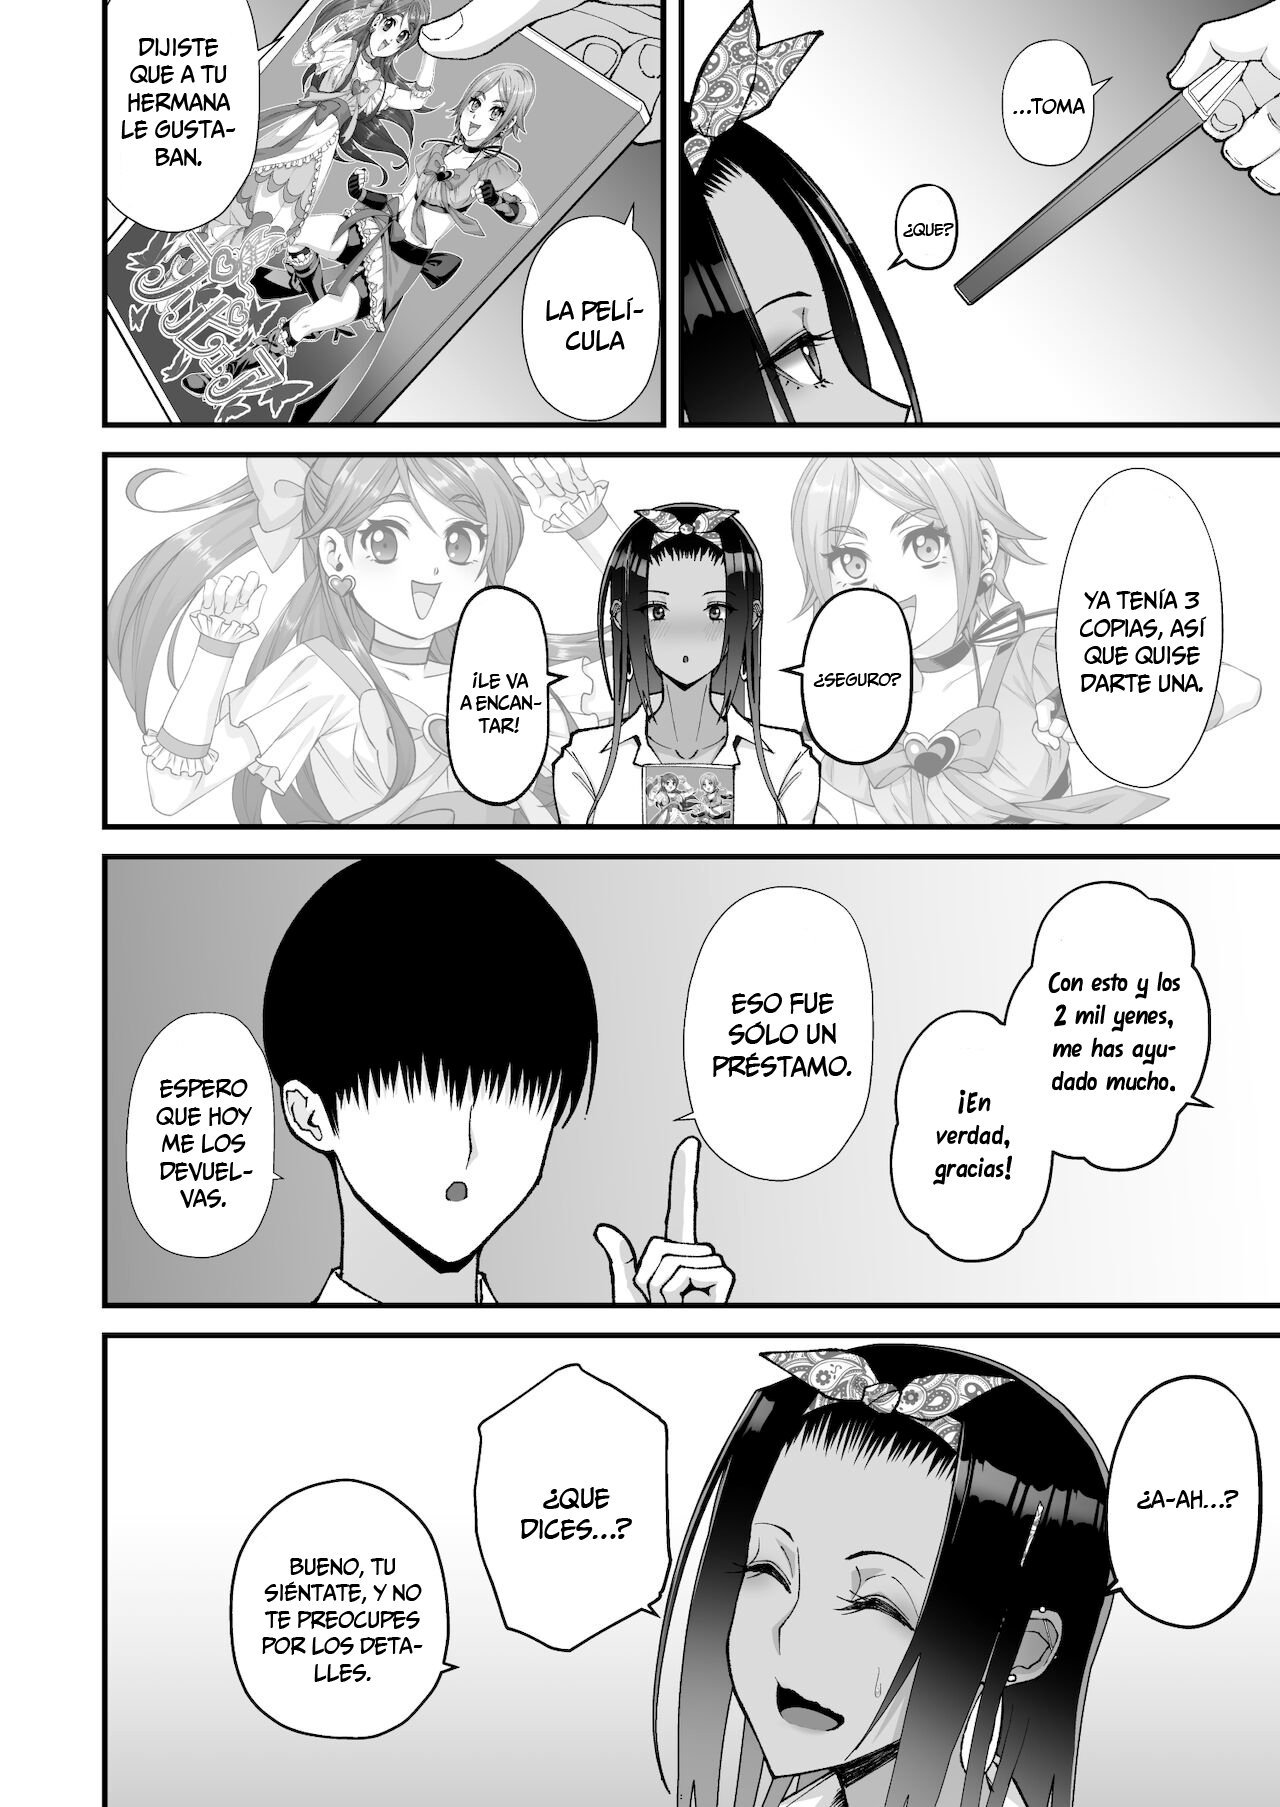 La historia sobre una amorosa gal otaku - 8